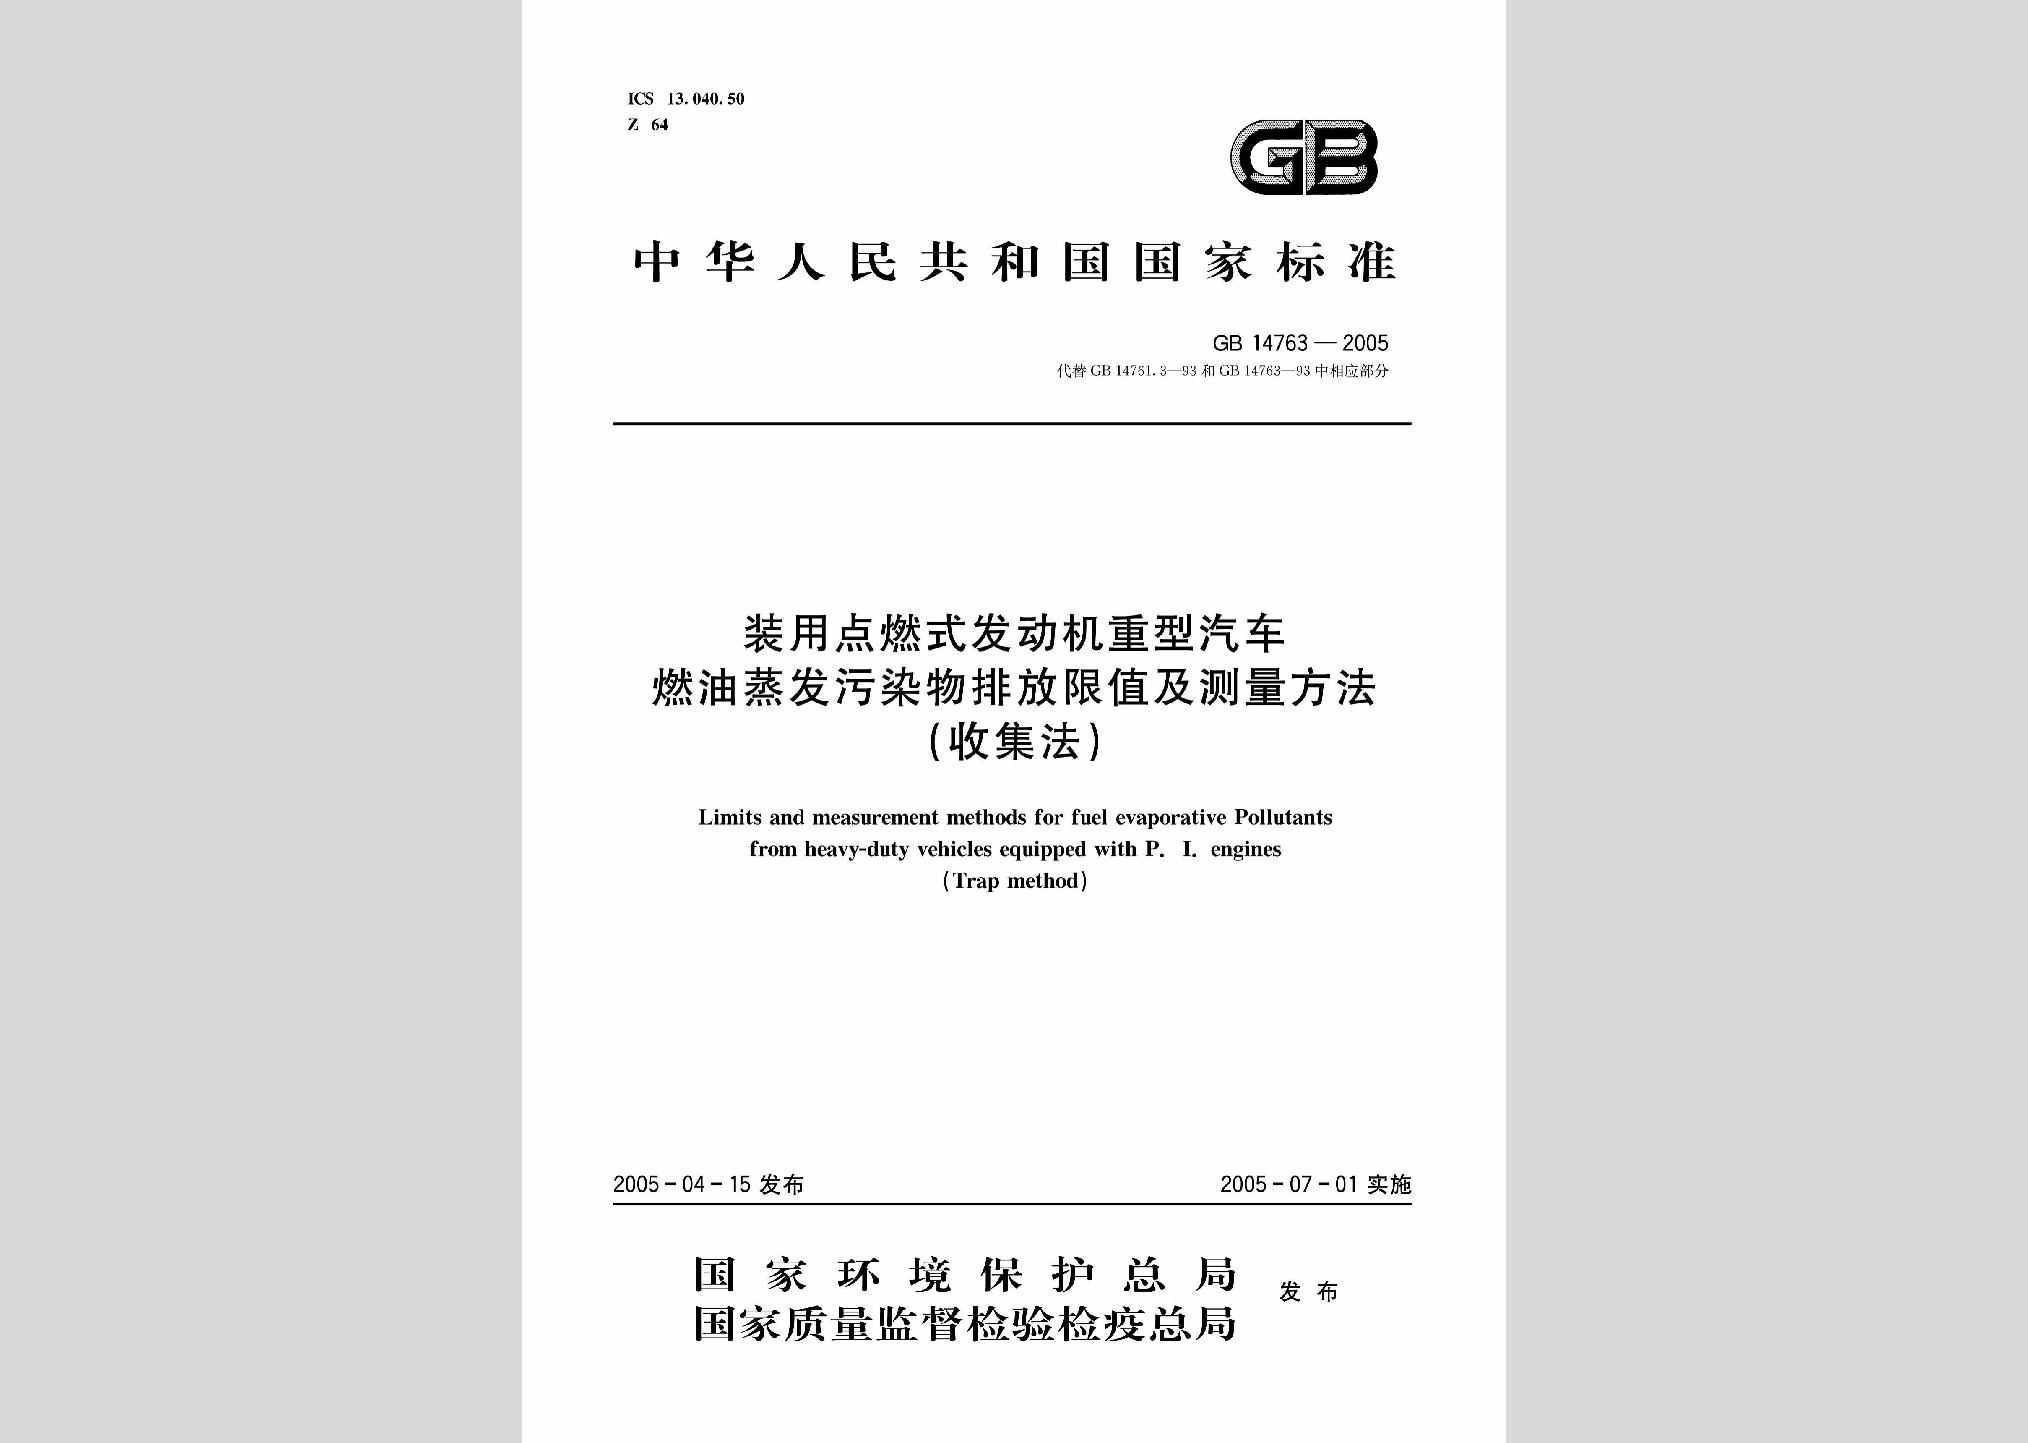 GB14763-2005：装用点燃式发动机重型汽车燃油蒸发污染物排放限值及测量方法(收集法)